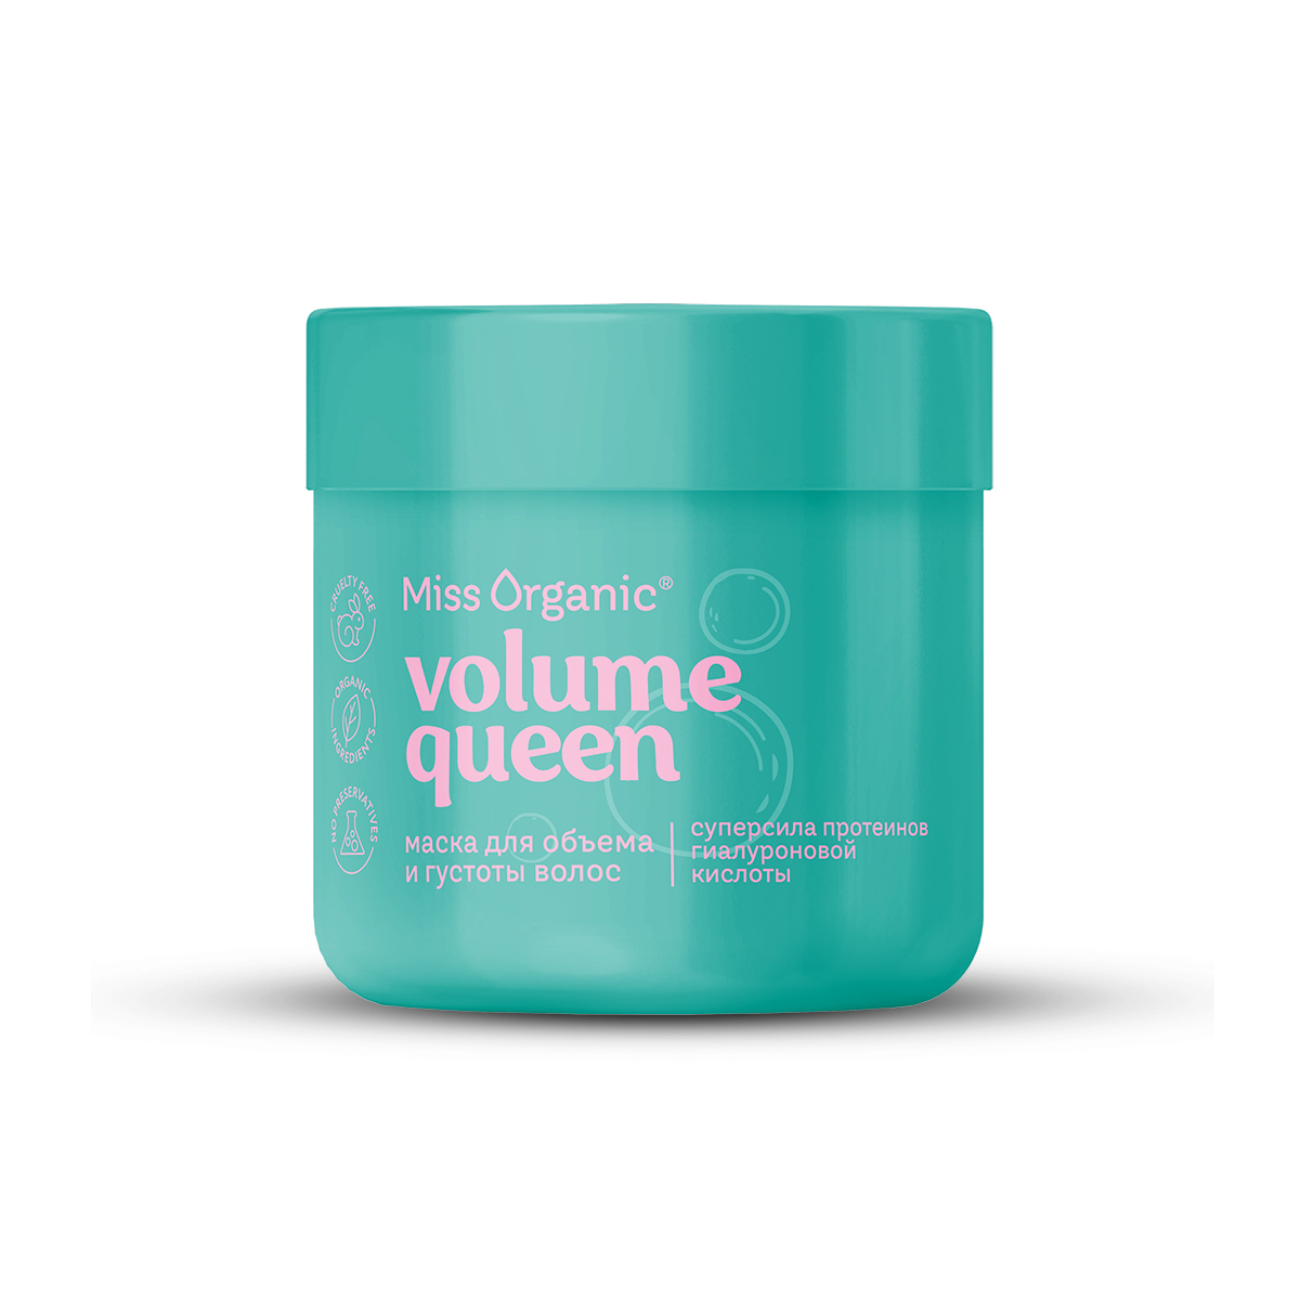 Маска для волос Miss Organic Volume Queen для объема и густоты волос, 140 мл уплотняющая кристалл маска с экстрактом хлопка invigo volume boost